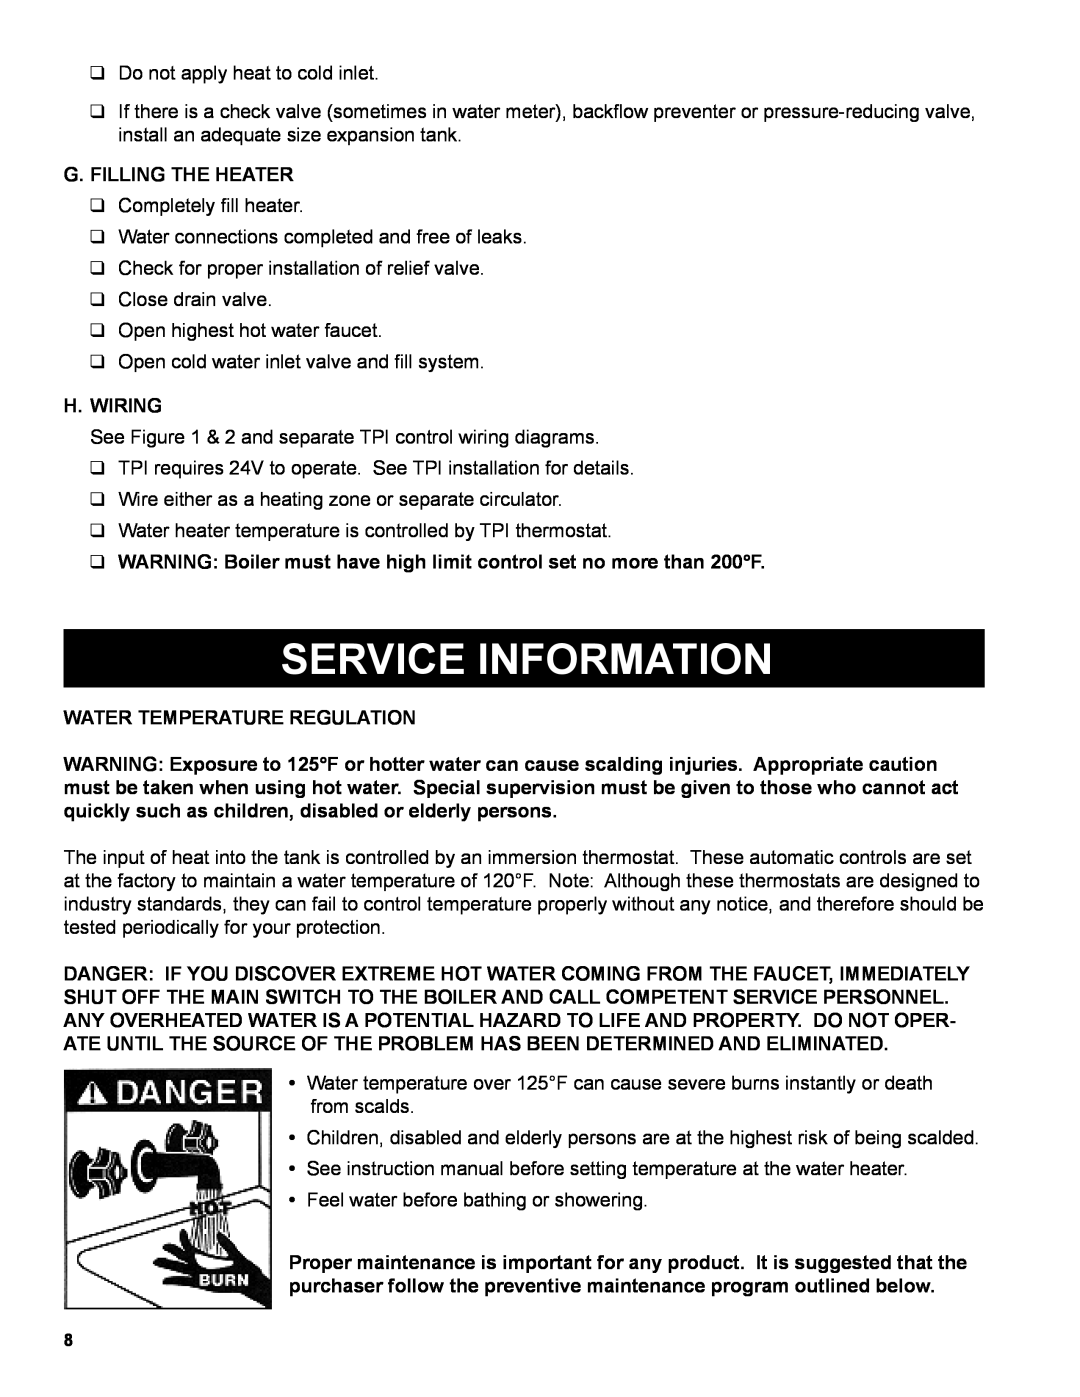 Burnham AL SL warranty Service Information, G.Filling The Heater, H.Wiring, Water Temperature Regulation 